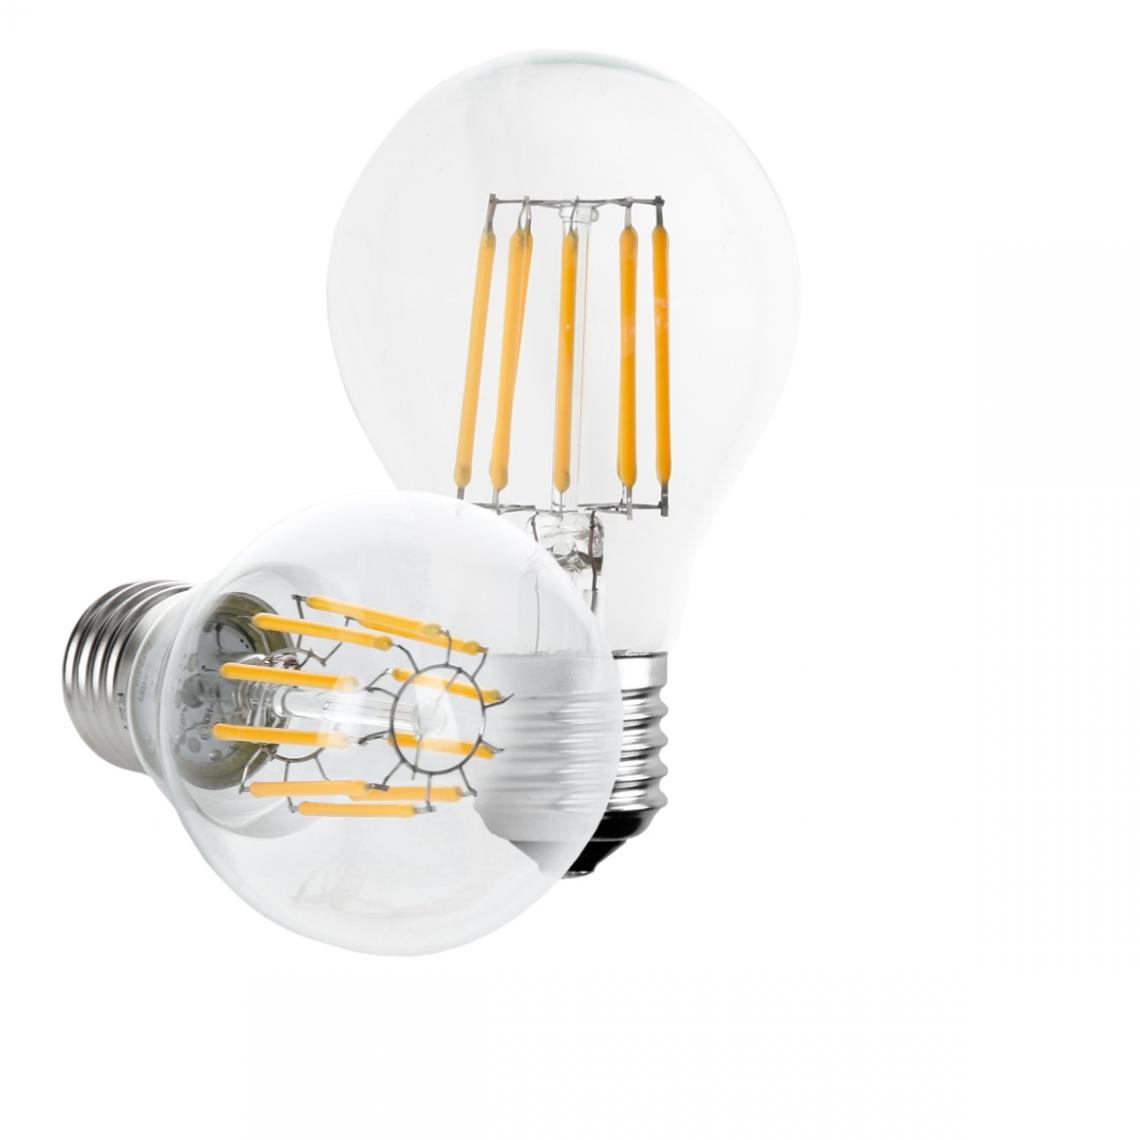 Ecd Germany - 2 x ampoule LED à filament E27 10W blanc chaud - Ampoules LED